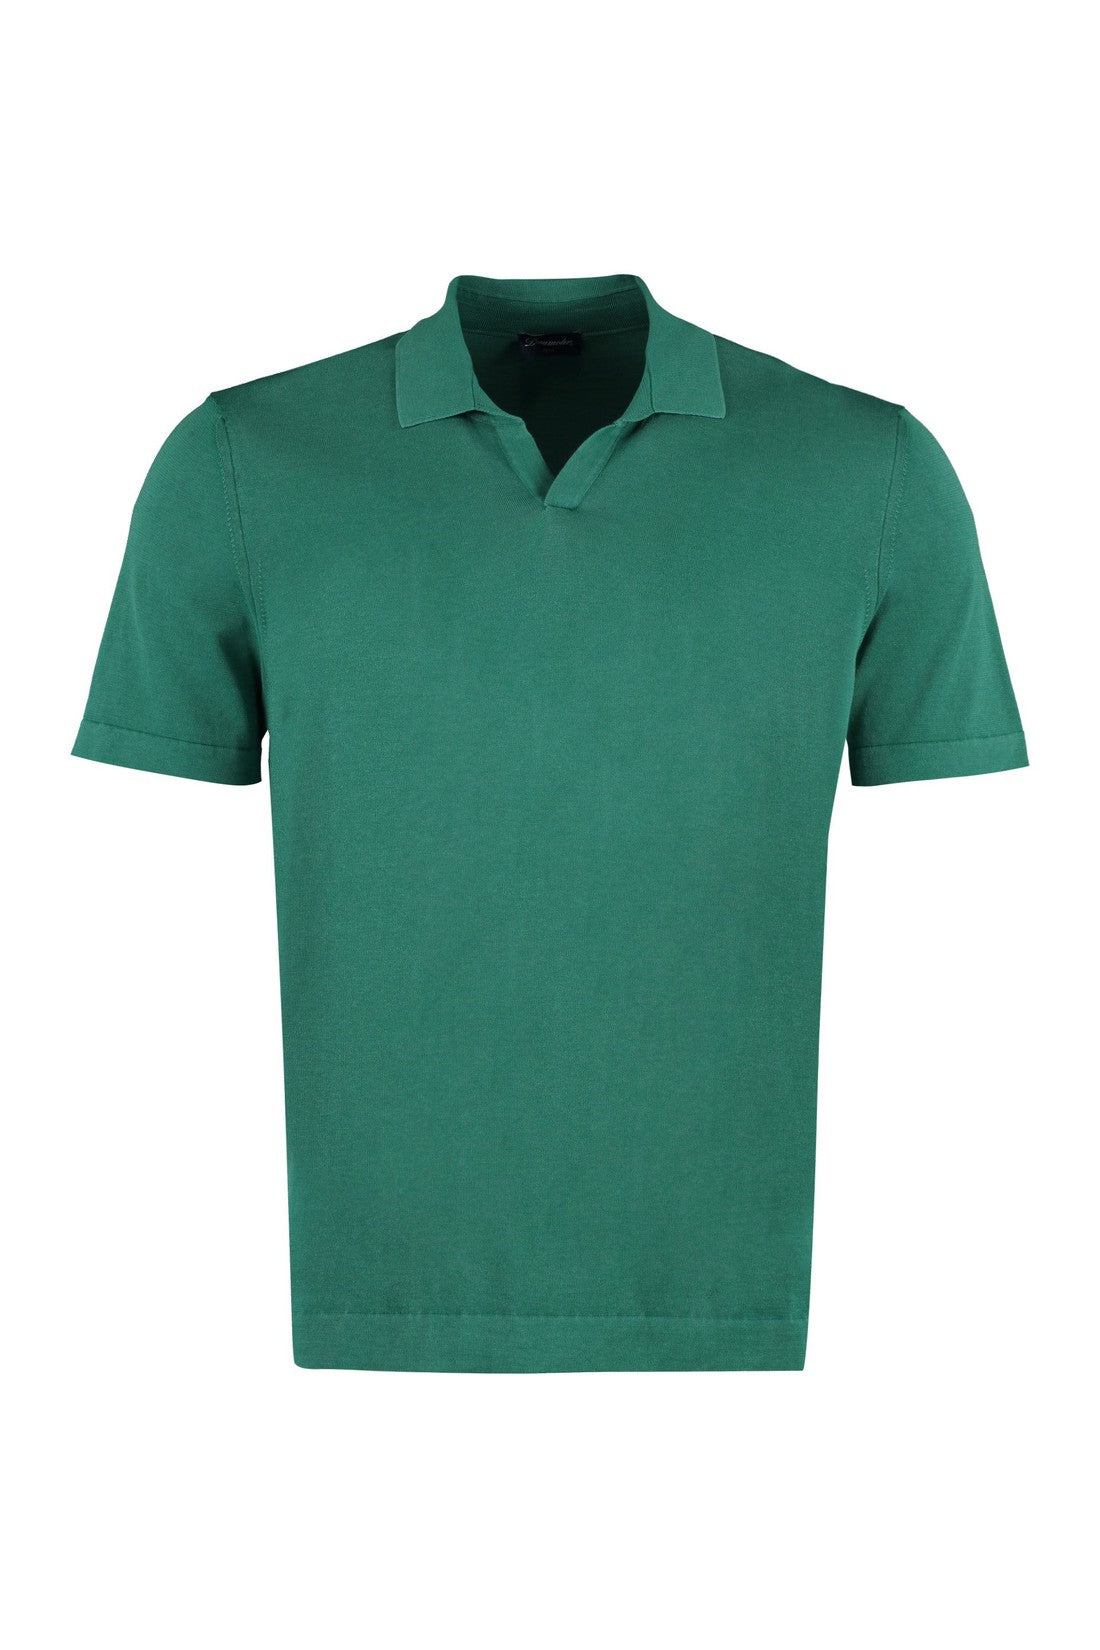 Piralo-OUTLET-SALE-Cotton polo shirt-ARCHIVIST